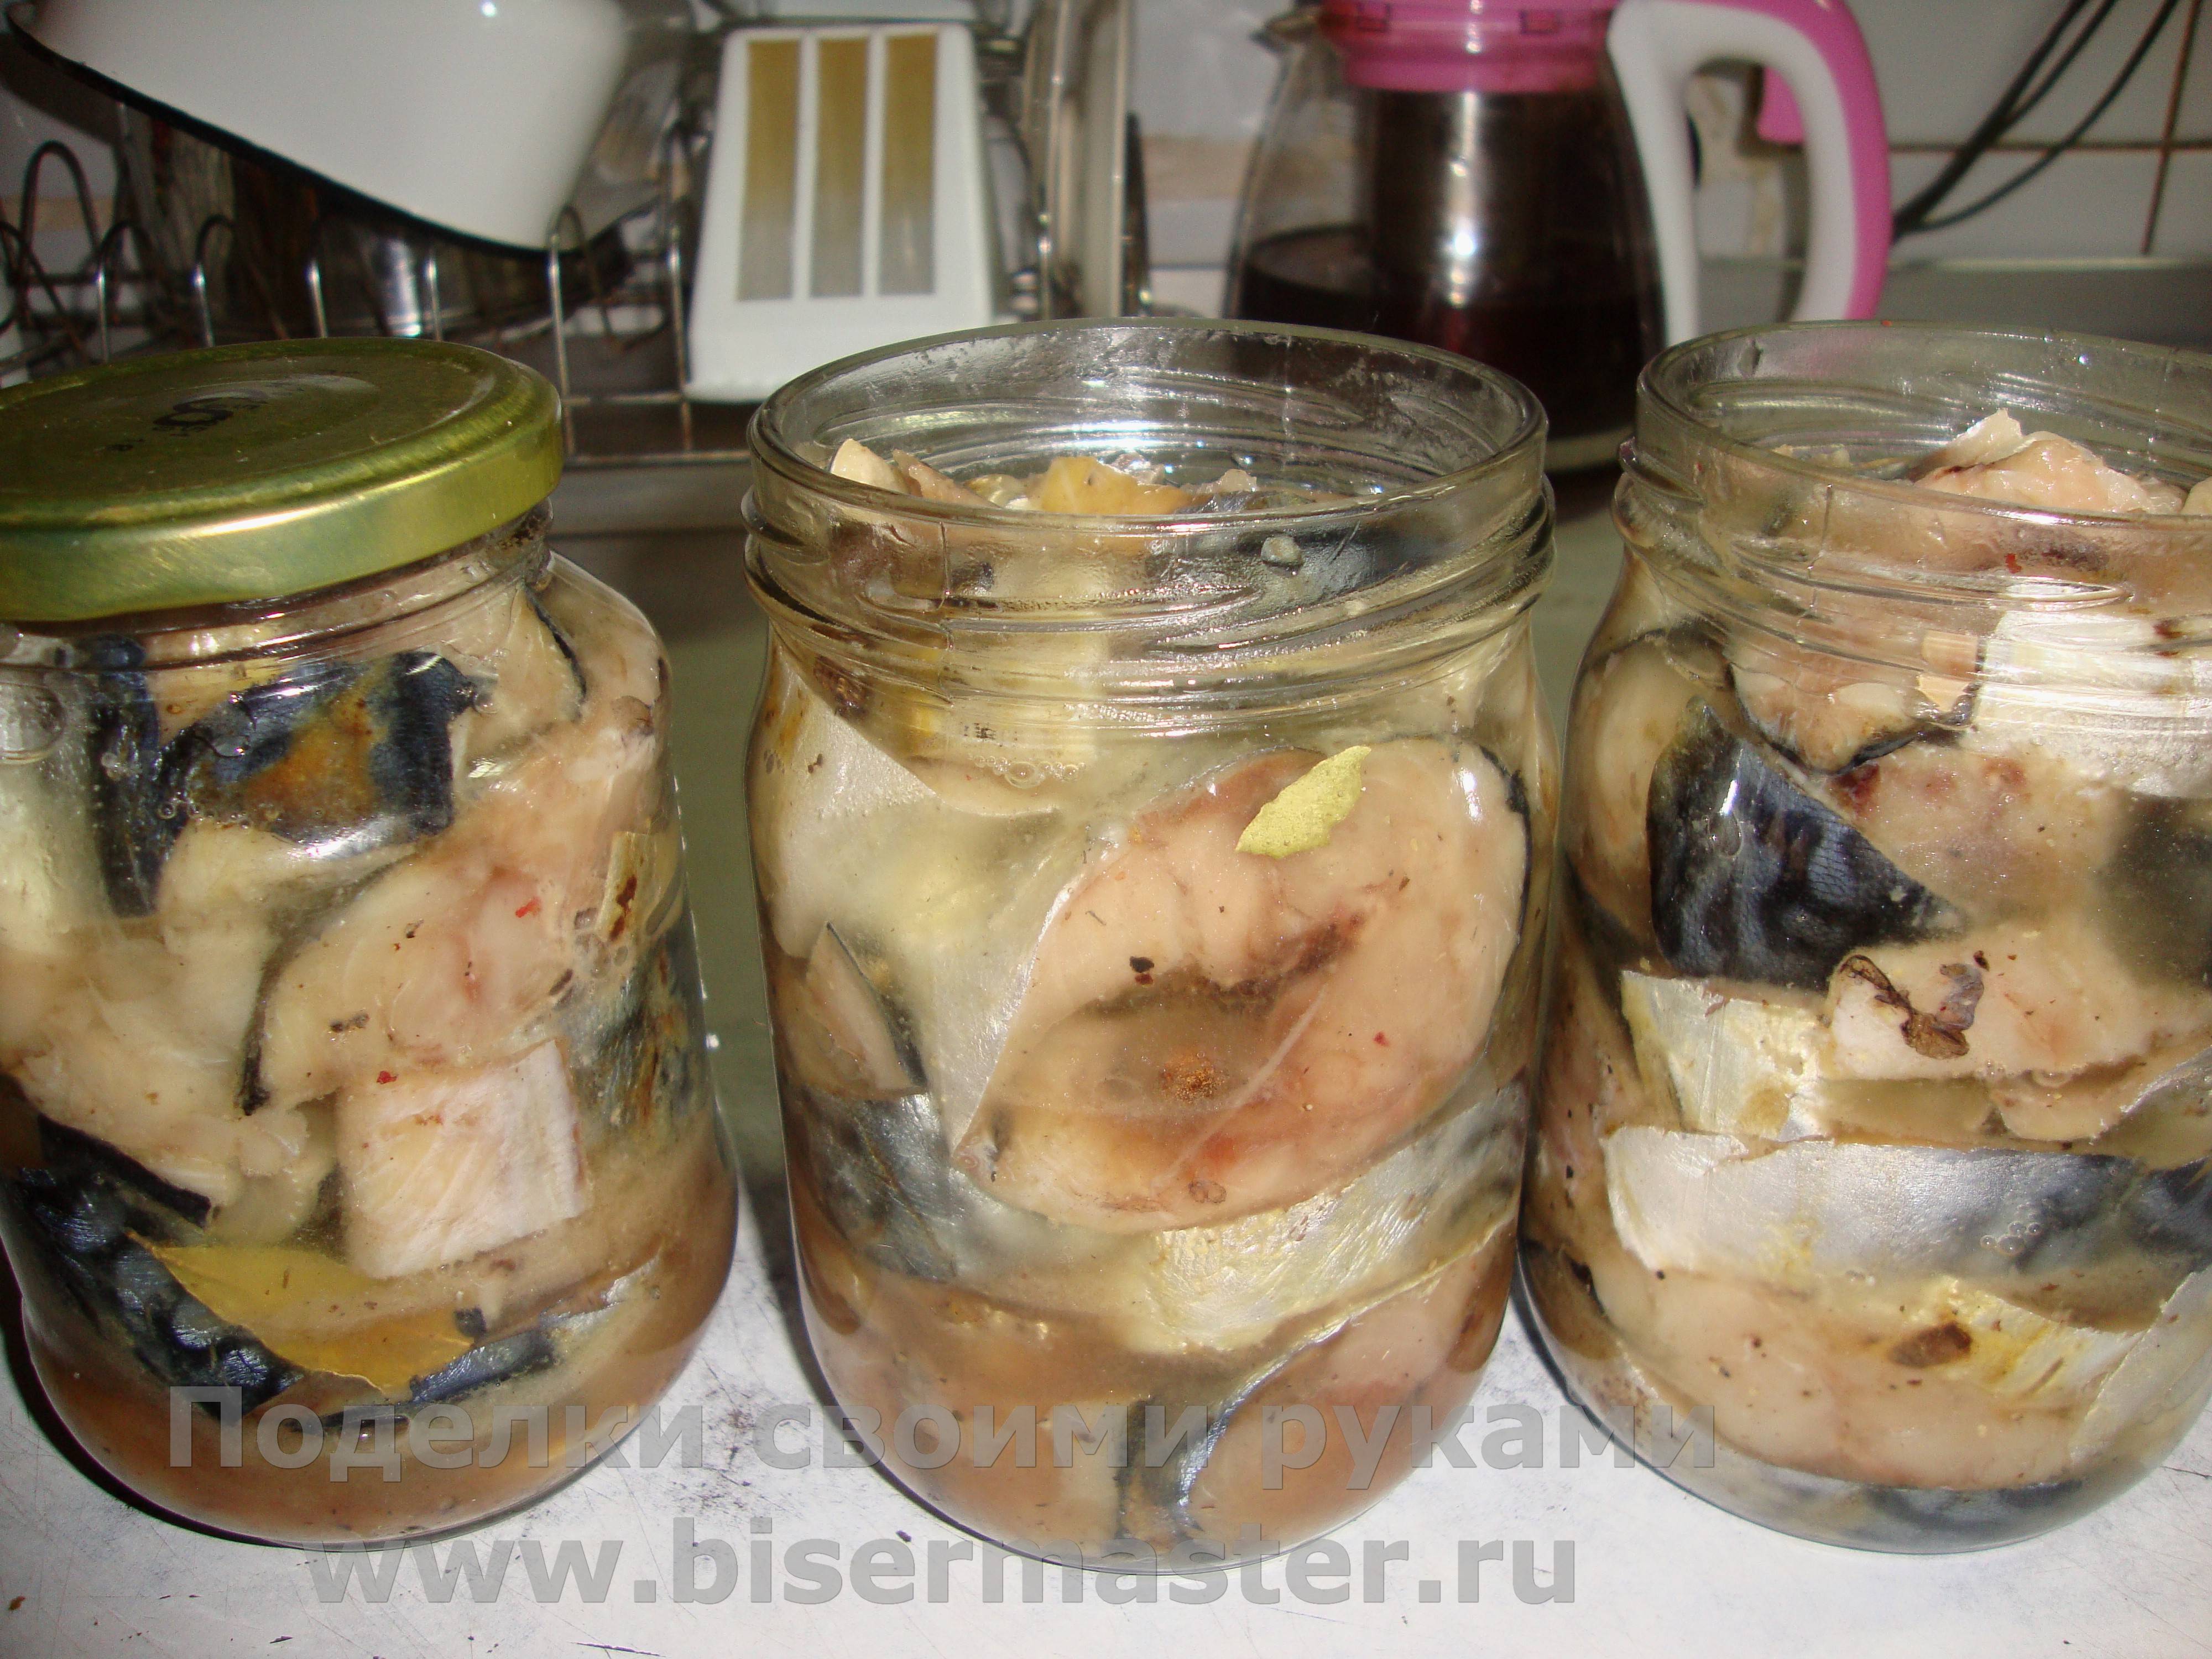 Рыбные консервы в стеклянных банках, приготовленные в духовке: в собственном соку, с овощами, в масле или томате